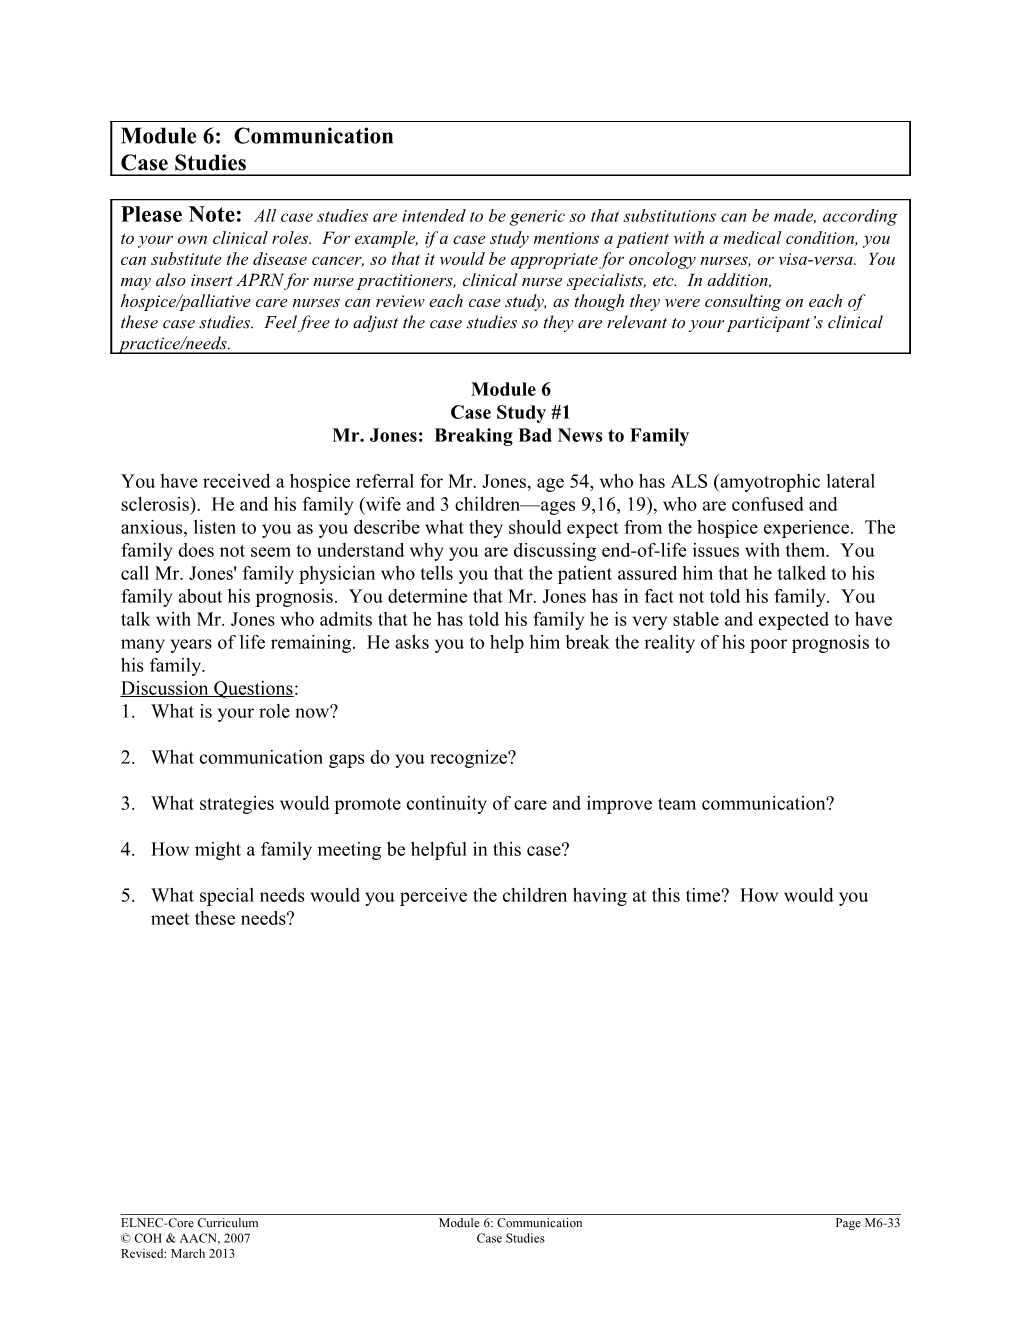 Module 6: Communication Case Studies